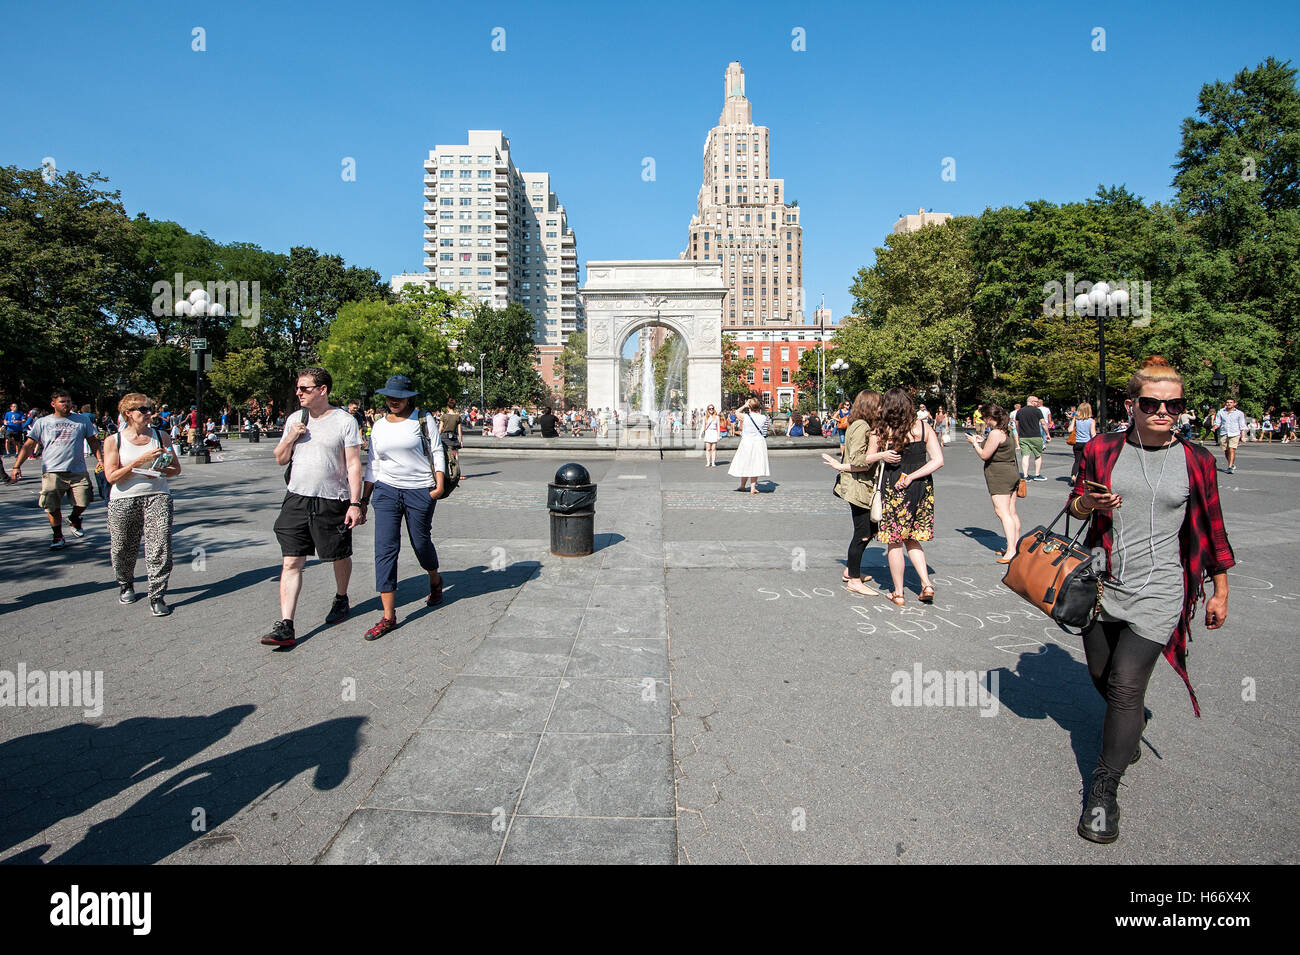 Washington Square Park entre Greenwich Village et East Village, Washington Square Arch, Manhattan, New York City Banque D'Images